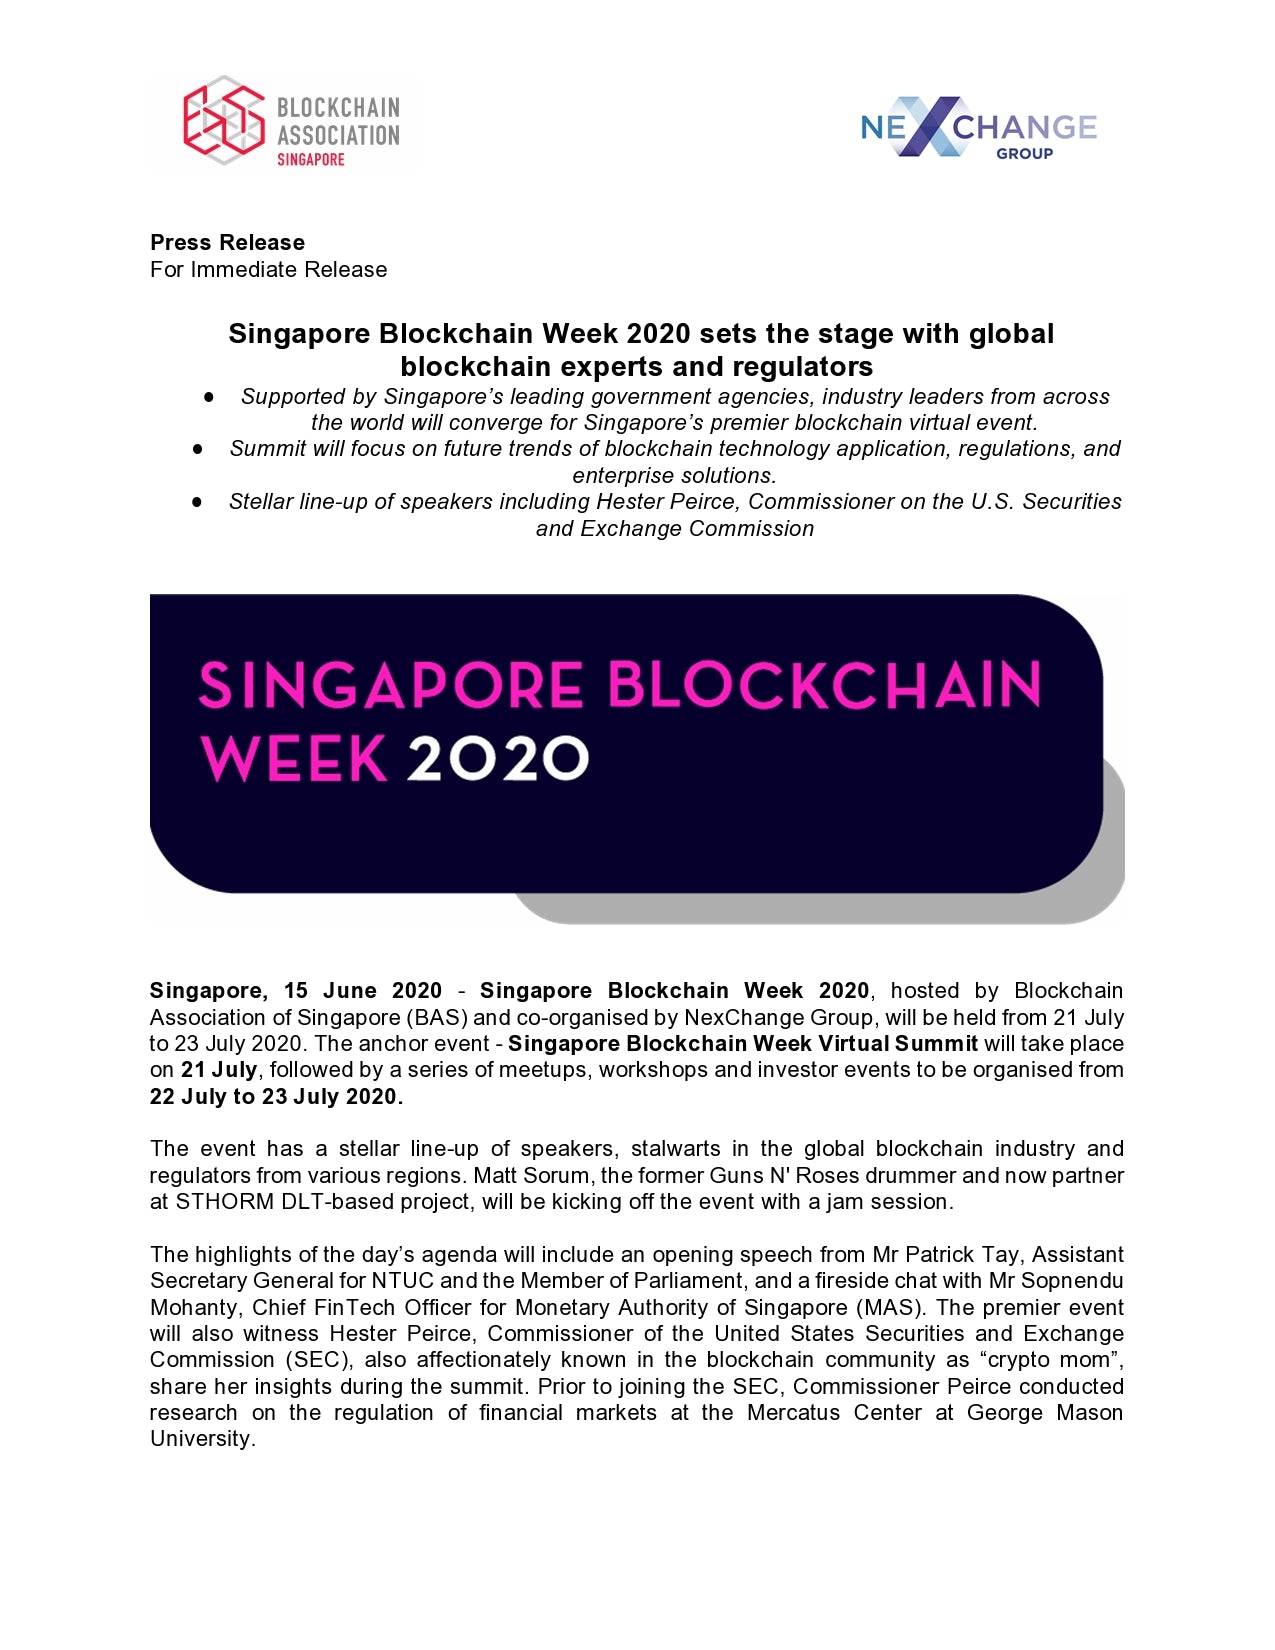 [FinTech News] Singapore Blockchain Week 2020 Press Release